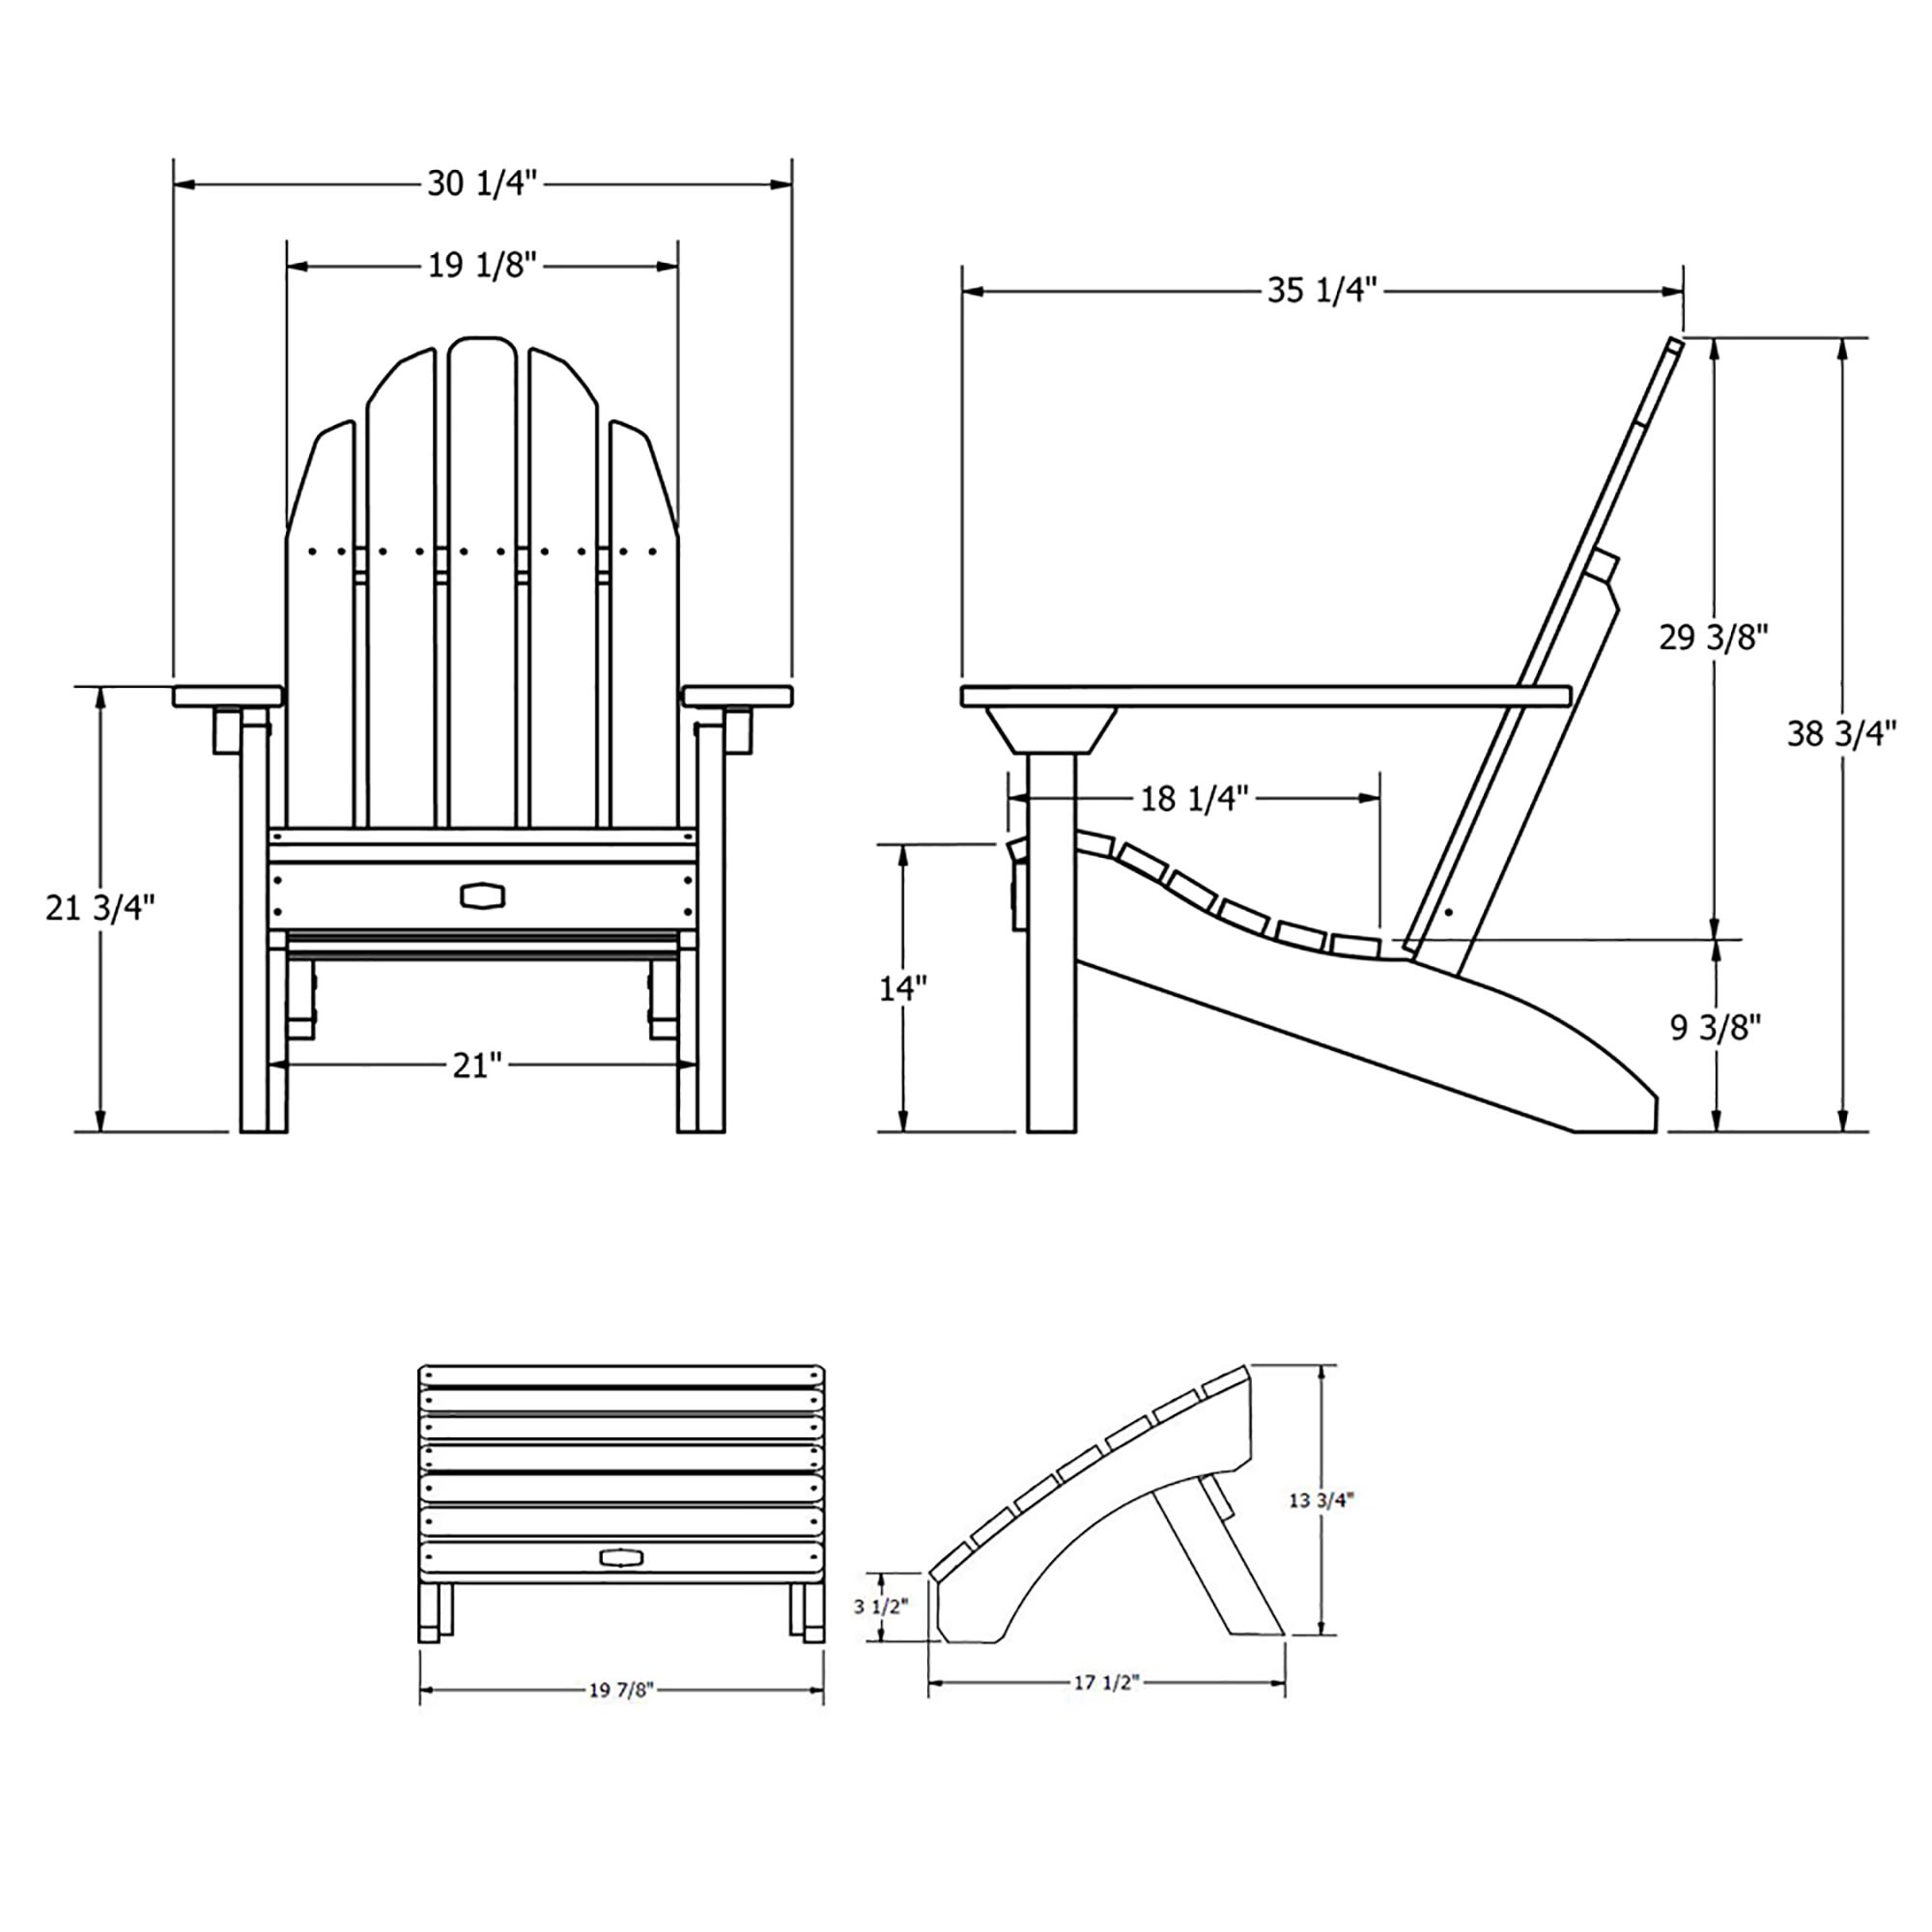 кресло садовое деревянное чертеж